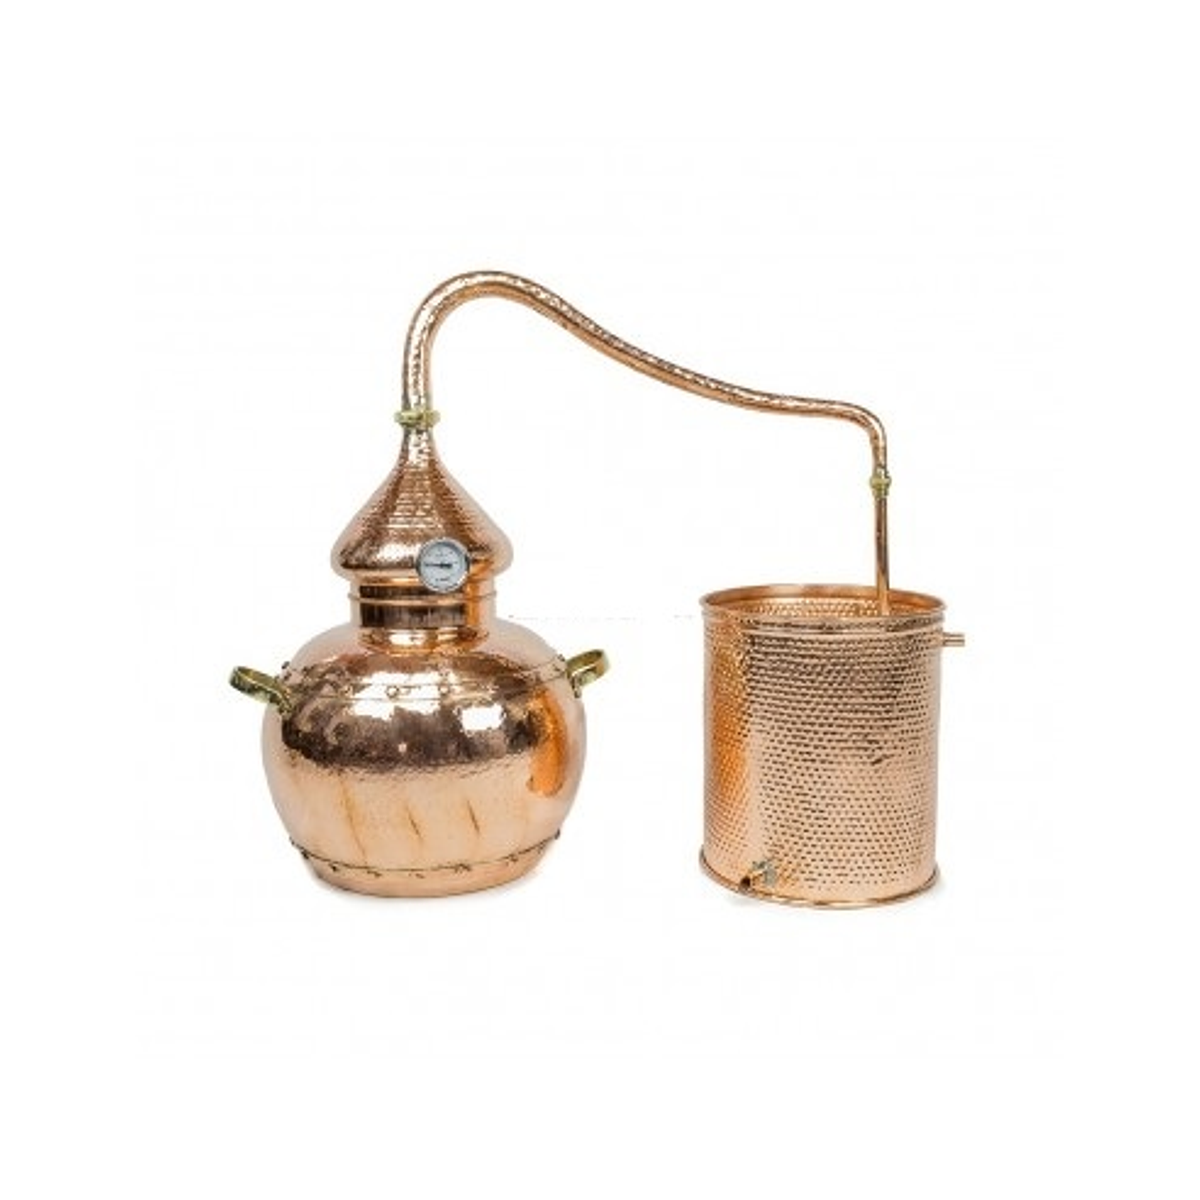 Alambique em Cobre – Uniões Rebitados 100 litros – CopperCrafts